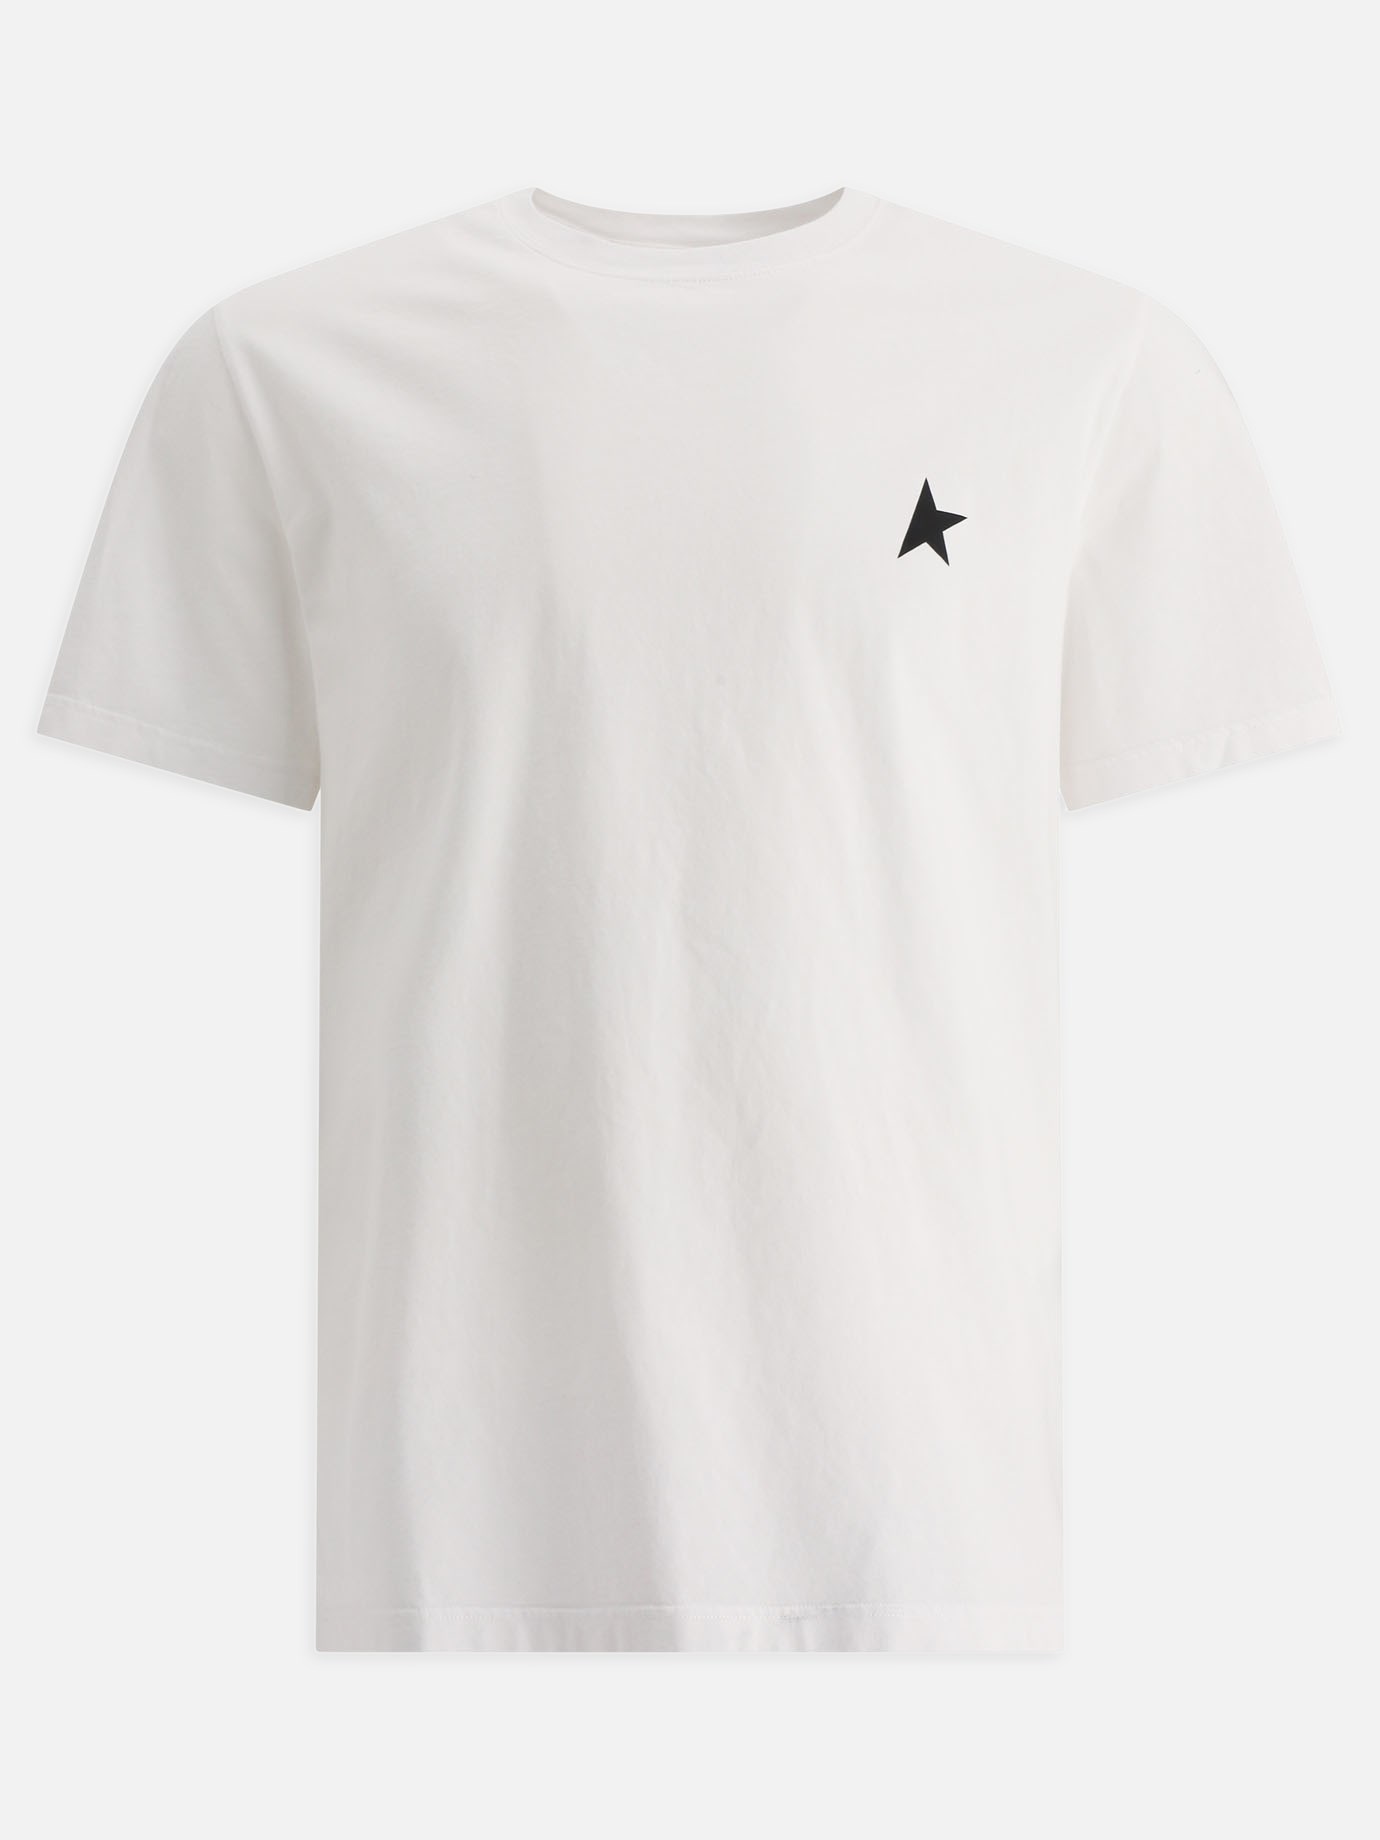  Star  t-shirt by Golden Goose